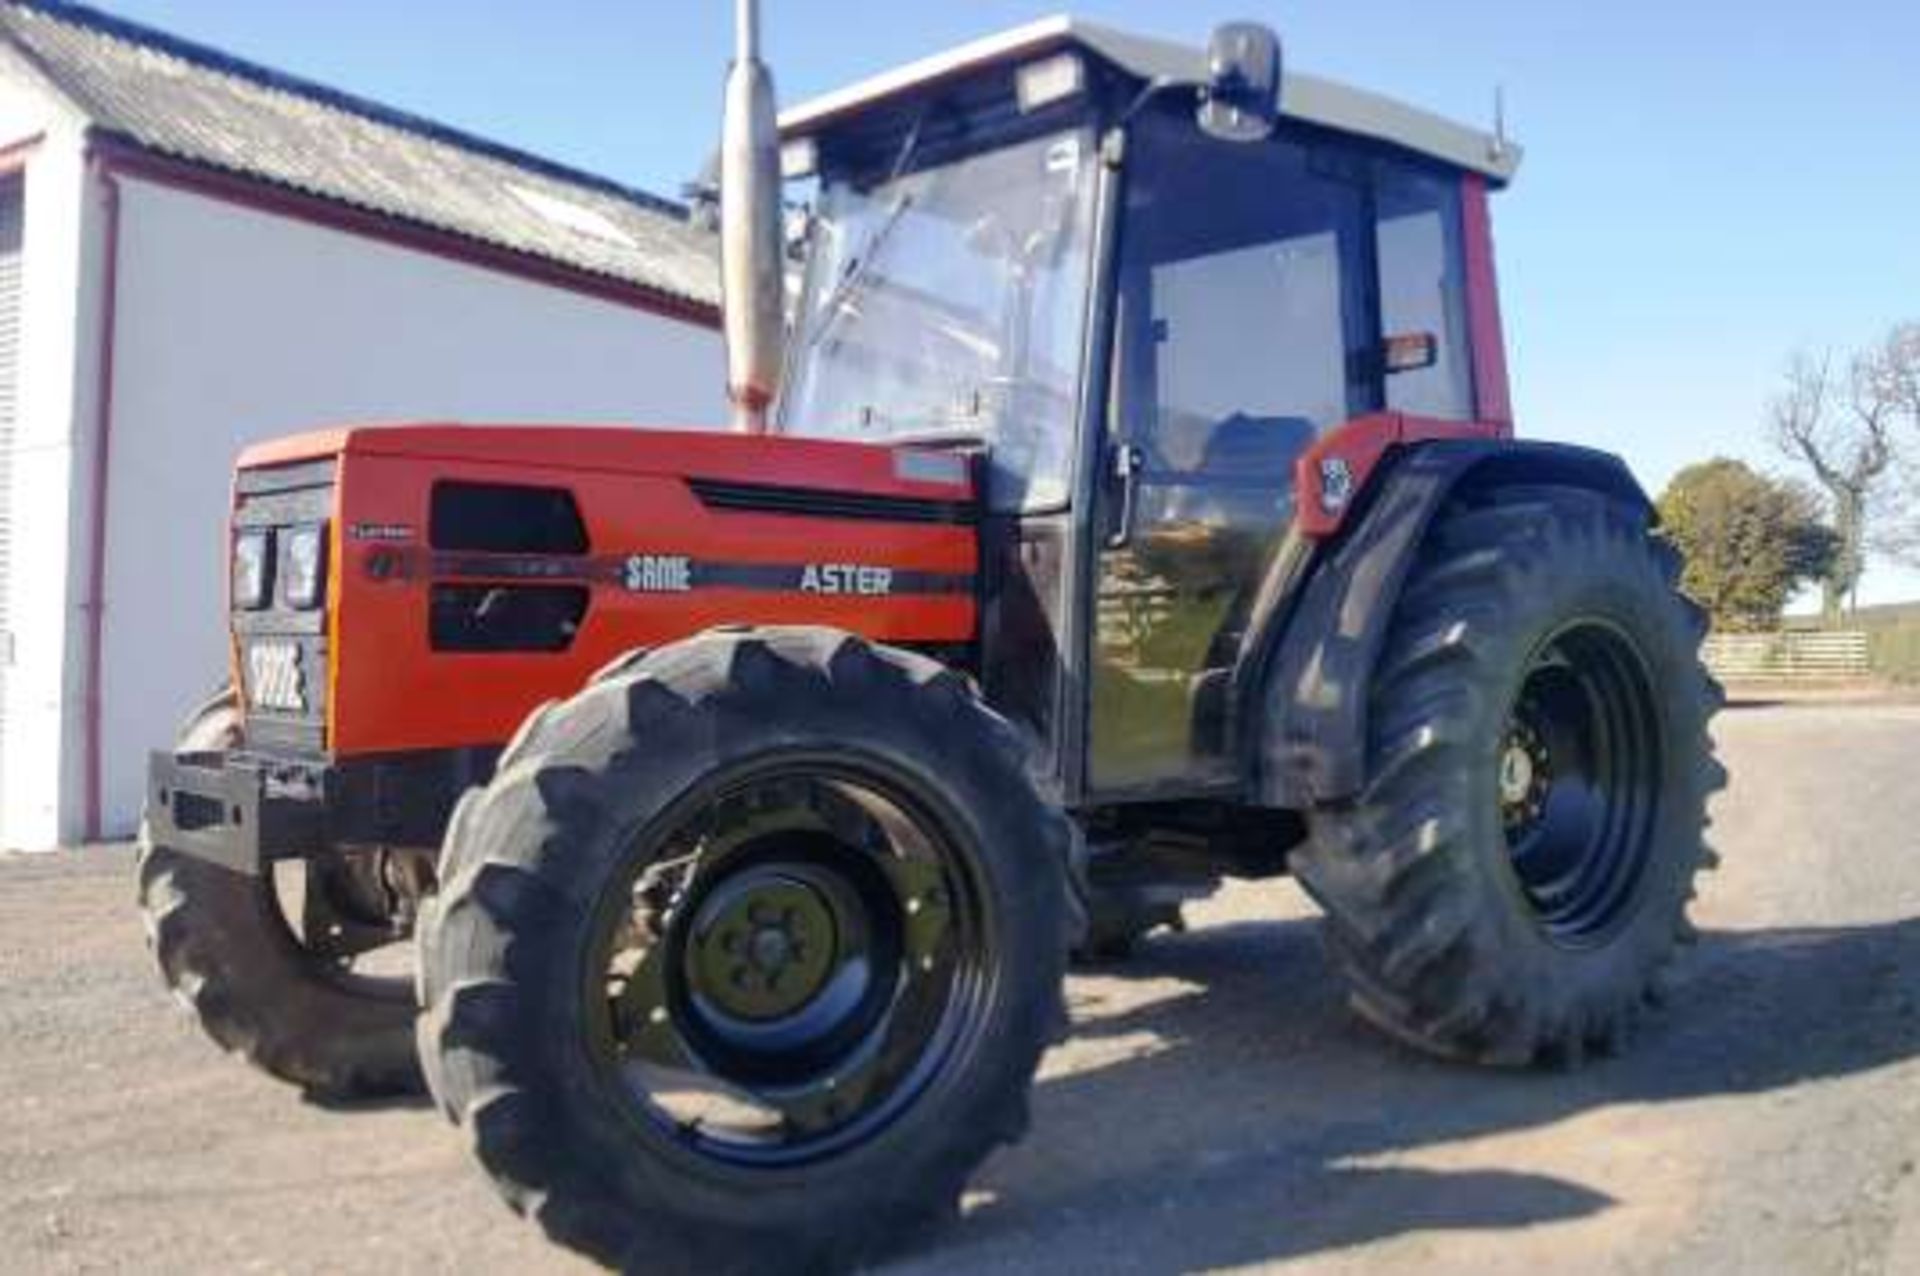 1992 SAME ASTER 70 TURBO t4 w/d tractor 40k gearbox. Reg No J729 NSJ. S/N AST7VT1709. 3260 hrs (not